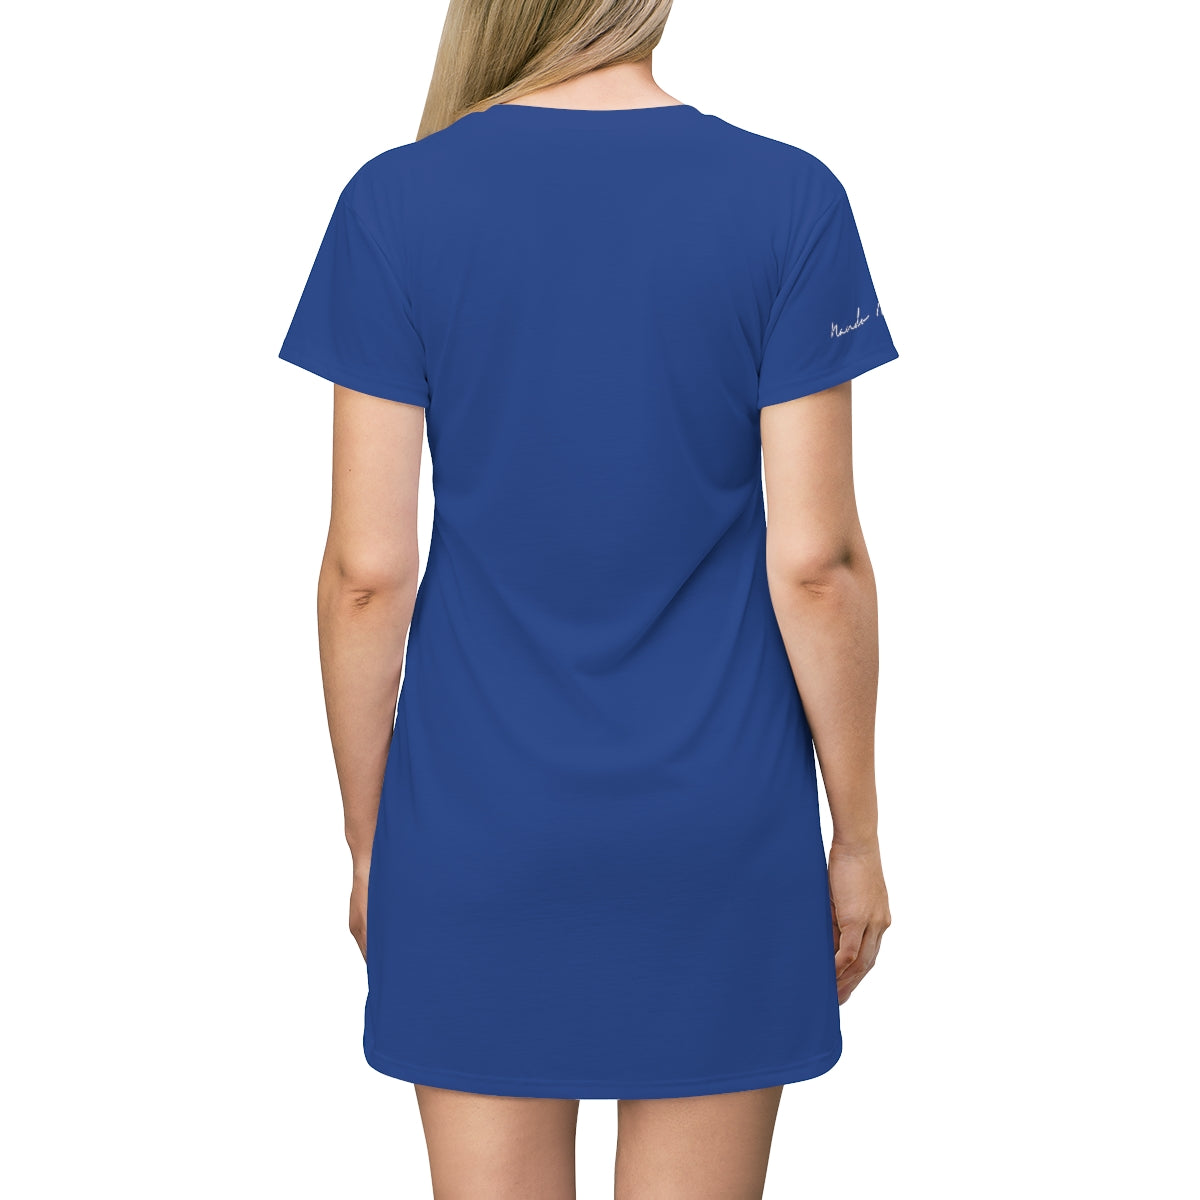 Shirtdress, Blue Floral Motive